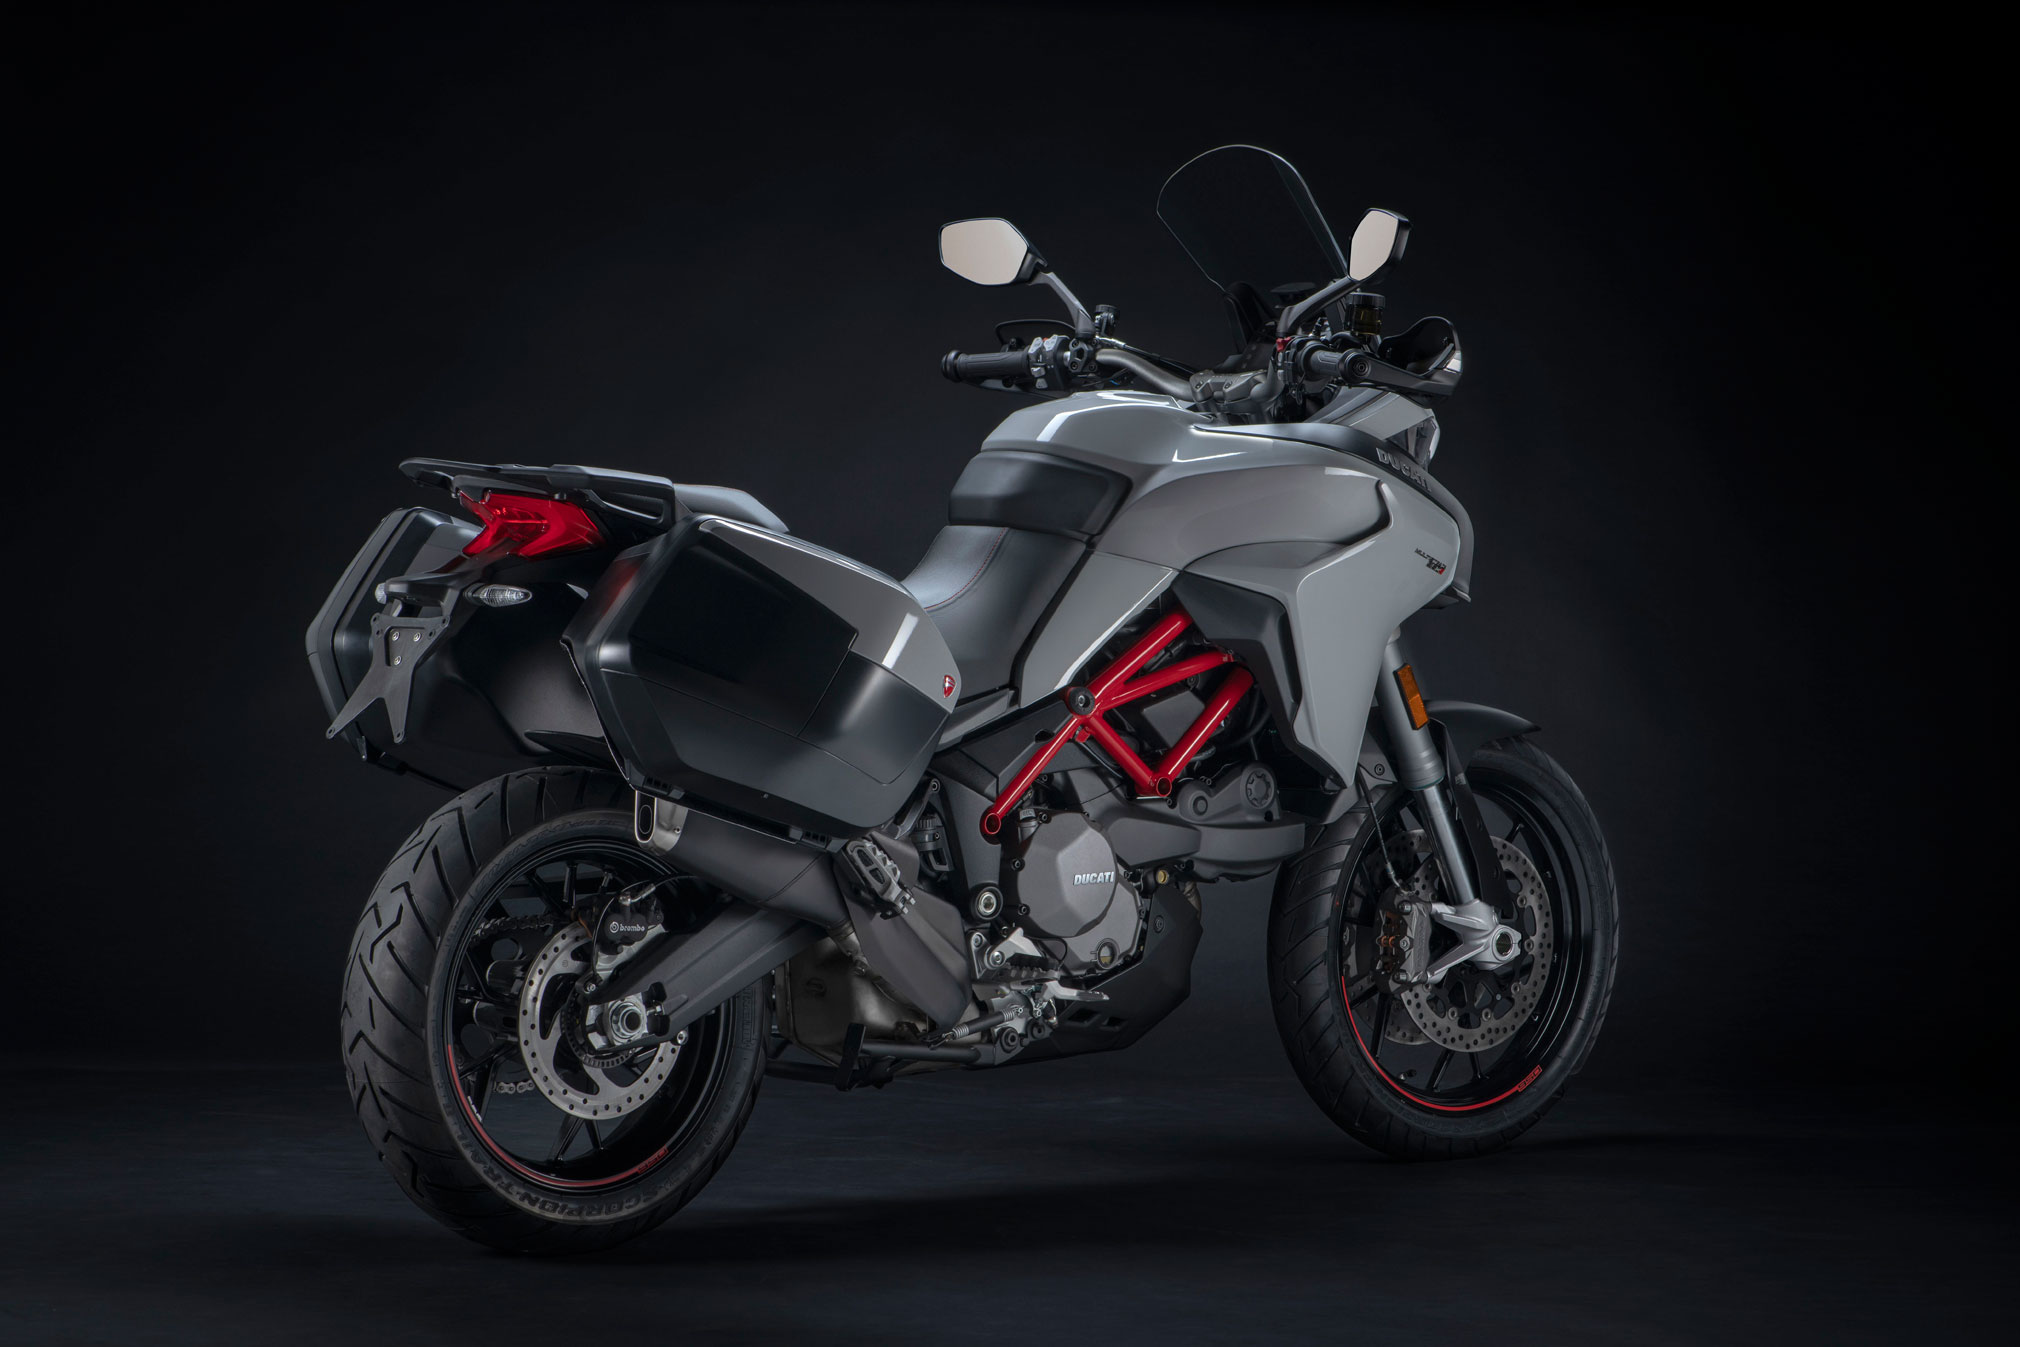 2020 Ducati Multistrada 950S Guide • Total Motorcycle